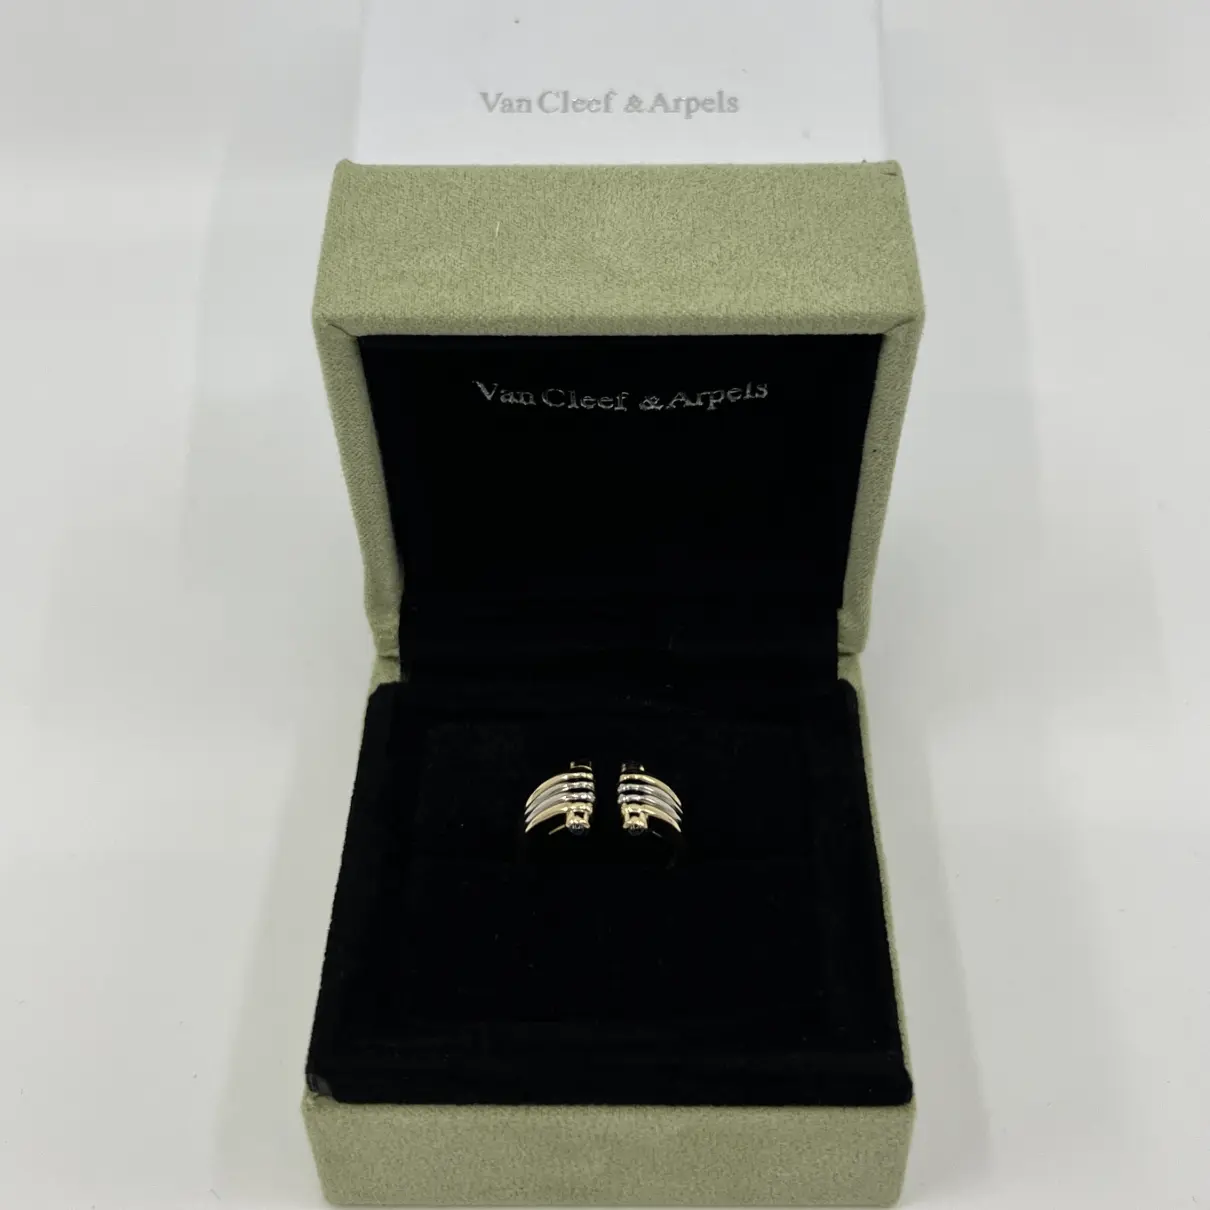 Buy Van Cleef & Arpels Yellow gold ring online